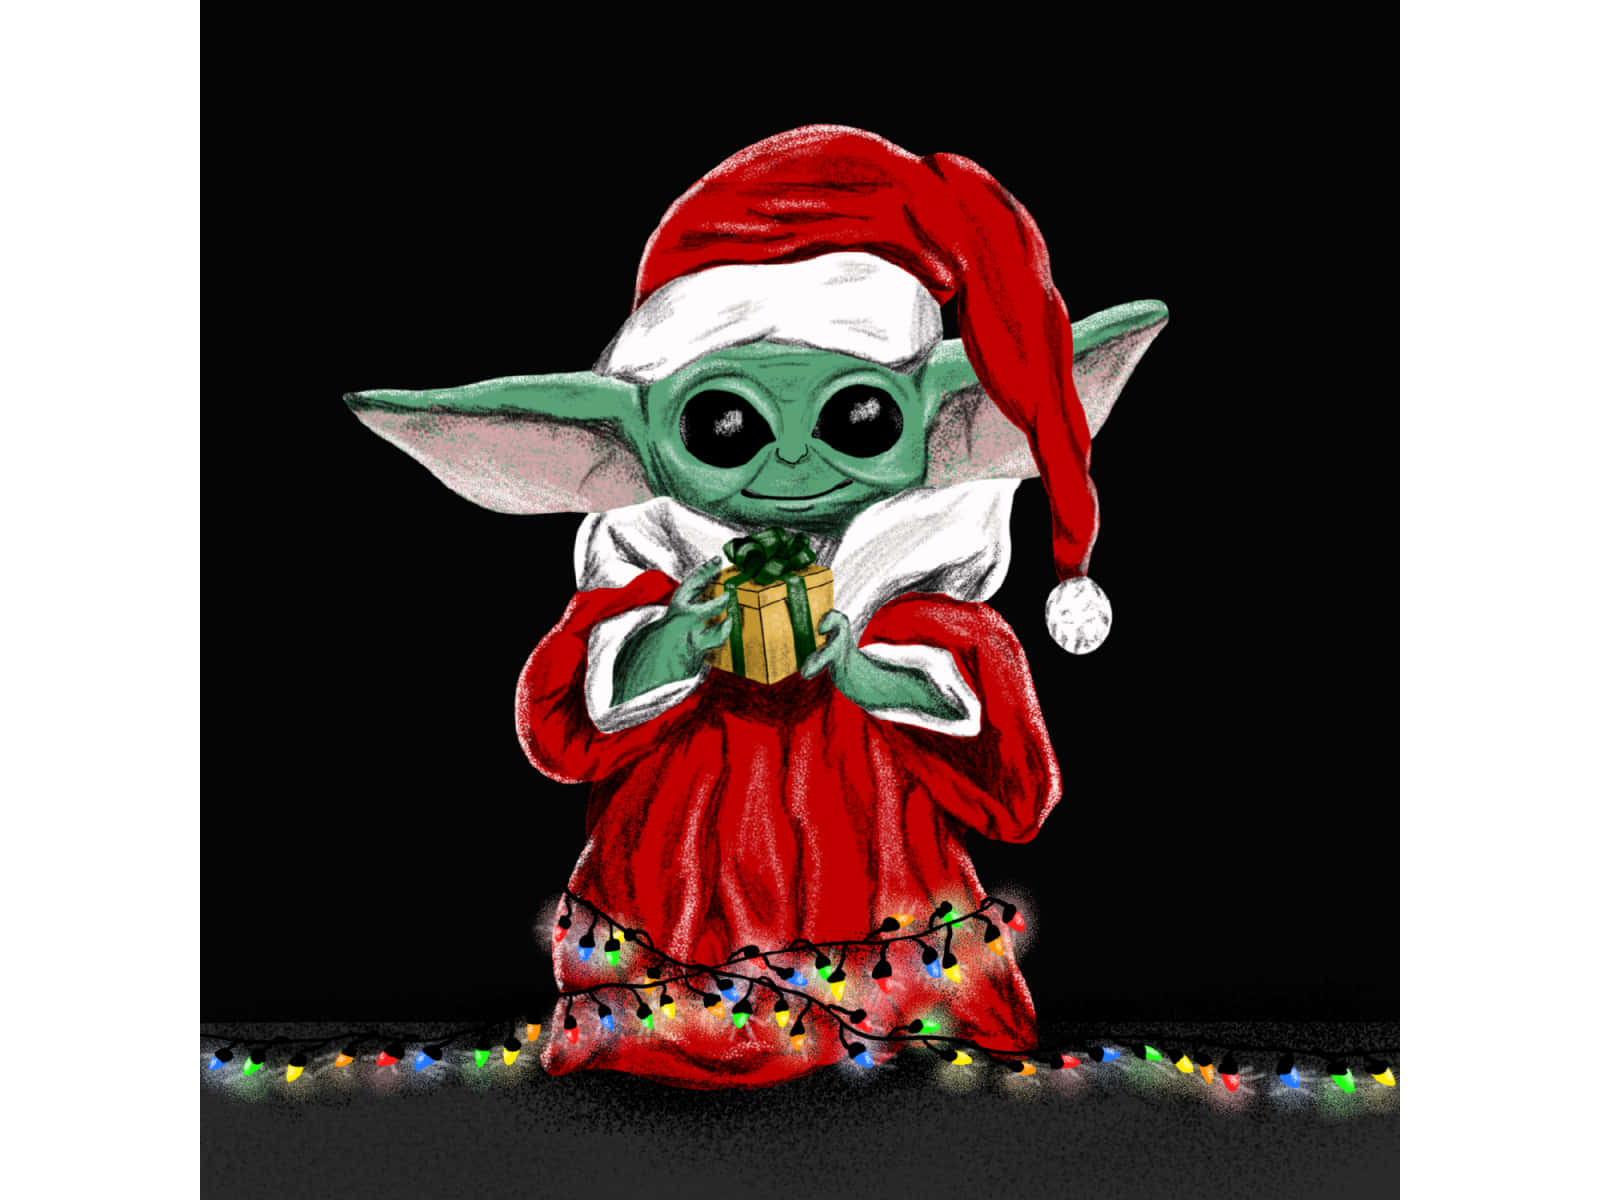 Verbreitedie Freude Mit Baby Yoda In Diesem Weihnachten. Wallpaper